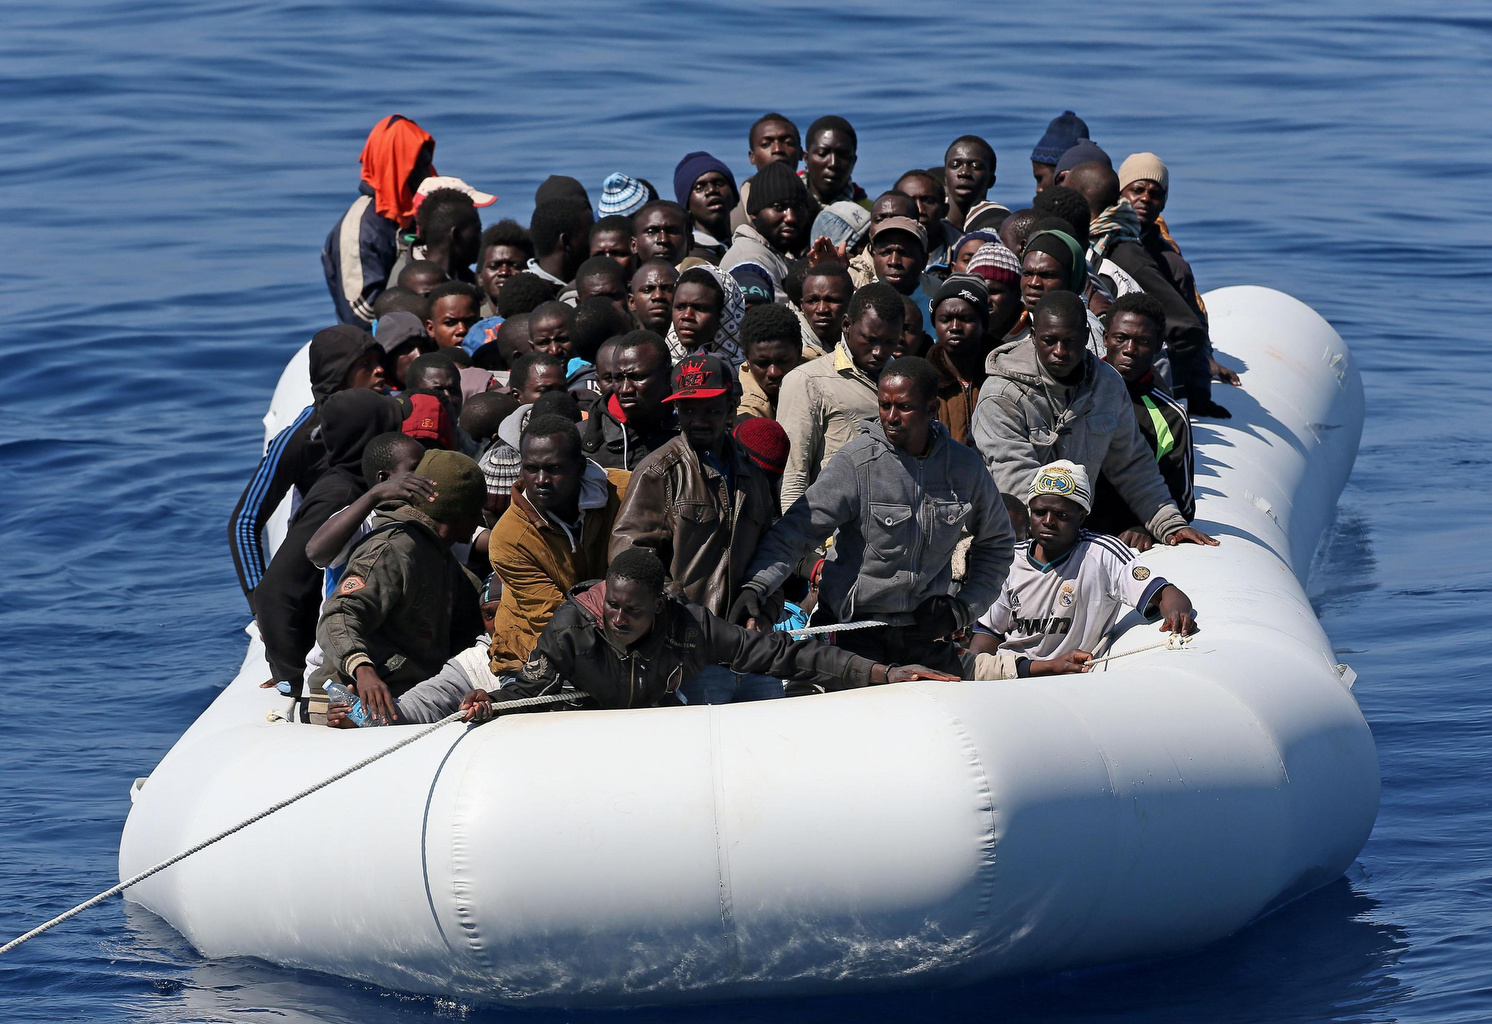 Променя ли се политиката на Европа спрямо нелегалната имиграция?